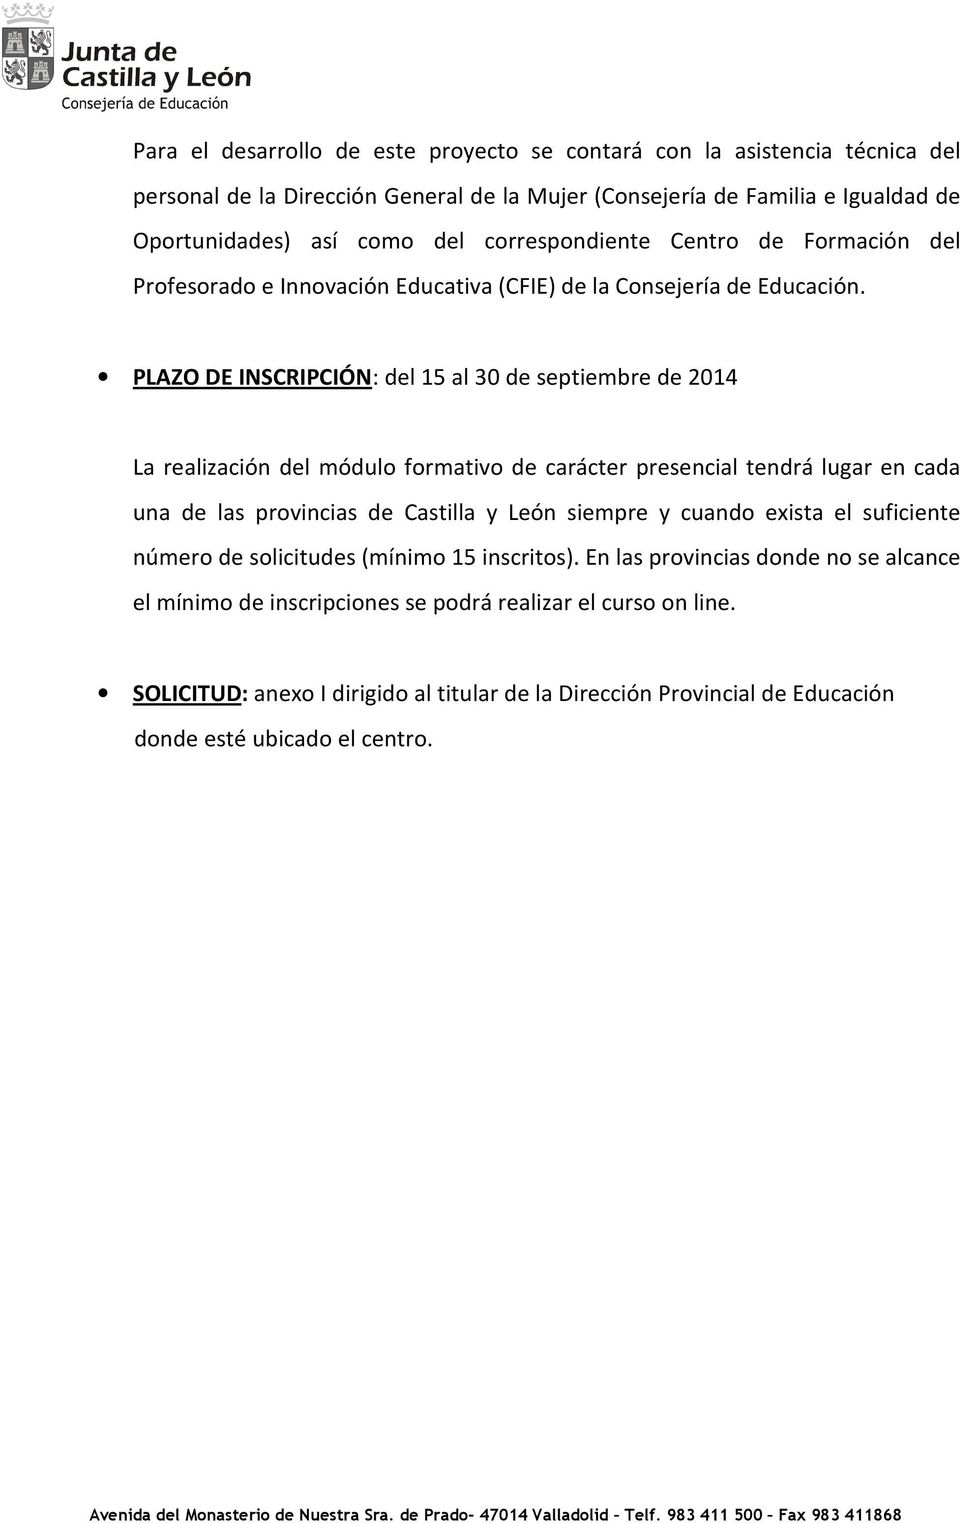 PLAZO DE INSCRIPCIÓN: del 15 al 30 de septiembre de 2014 La realización del módulo formativo de carácter presencial tendrá lugar en cada una de las provincias de Castilla y León siempre y